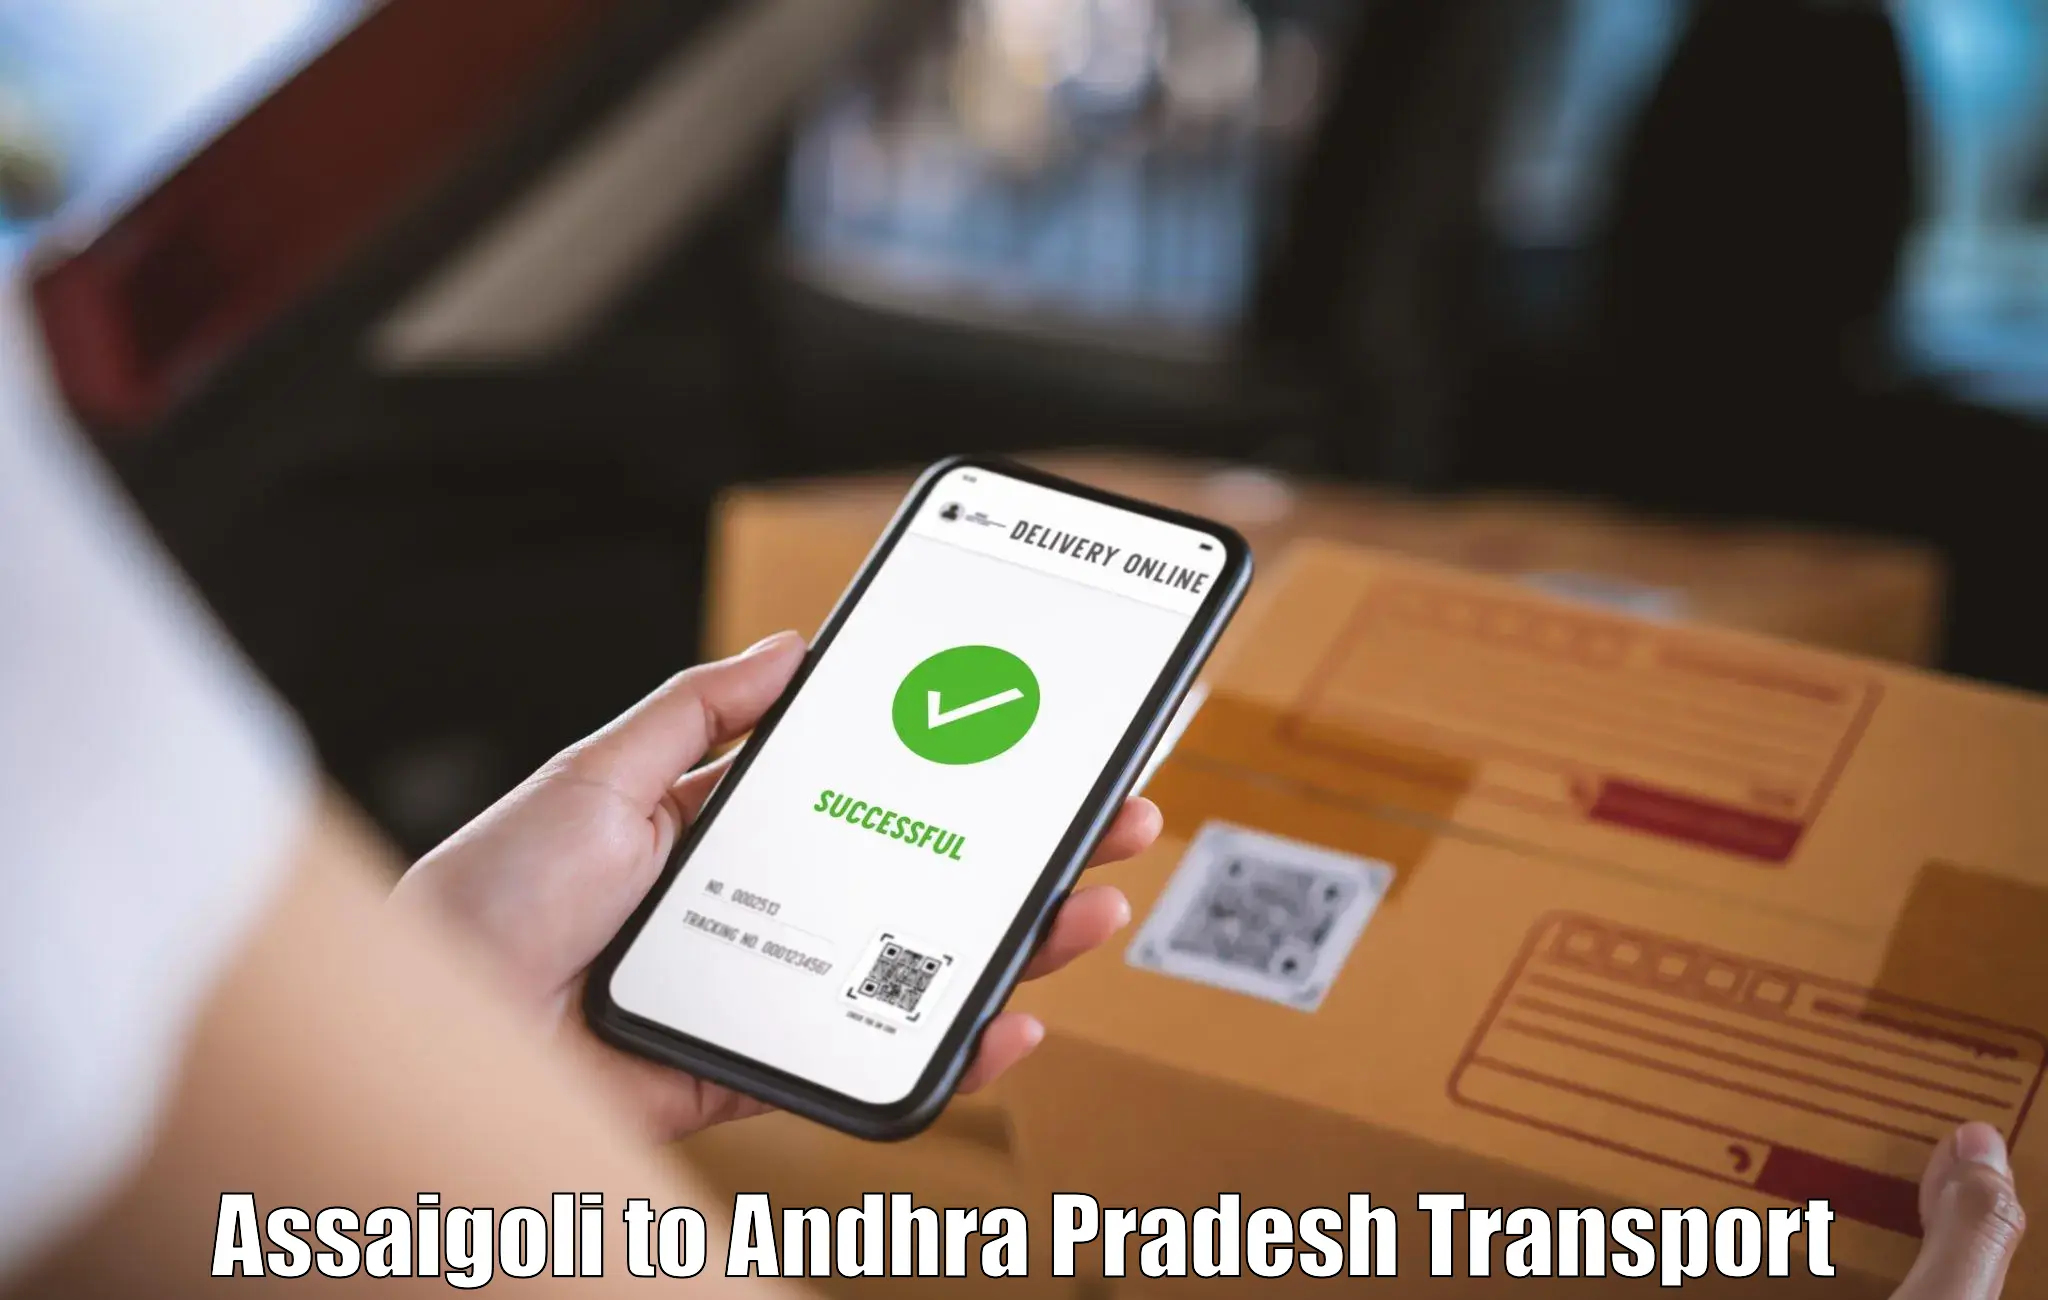 Material transport services Assaigoli to Chodavaram